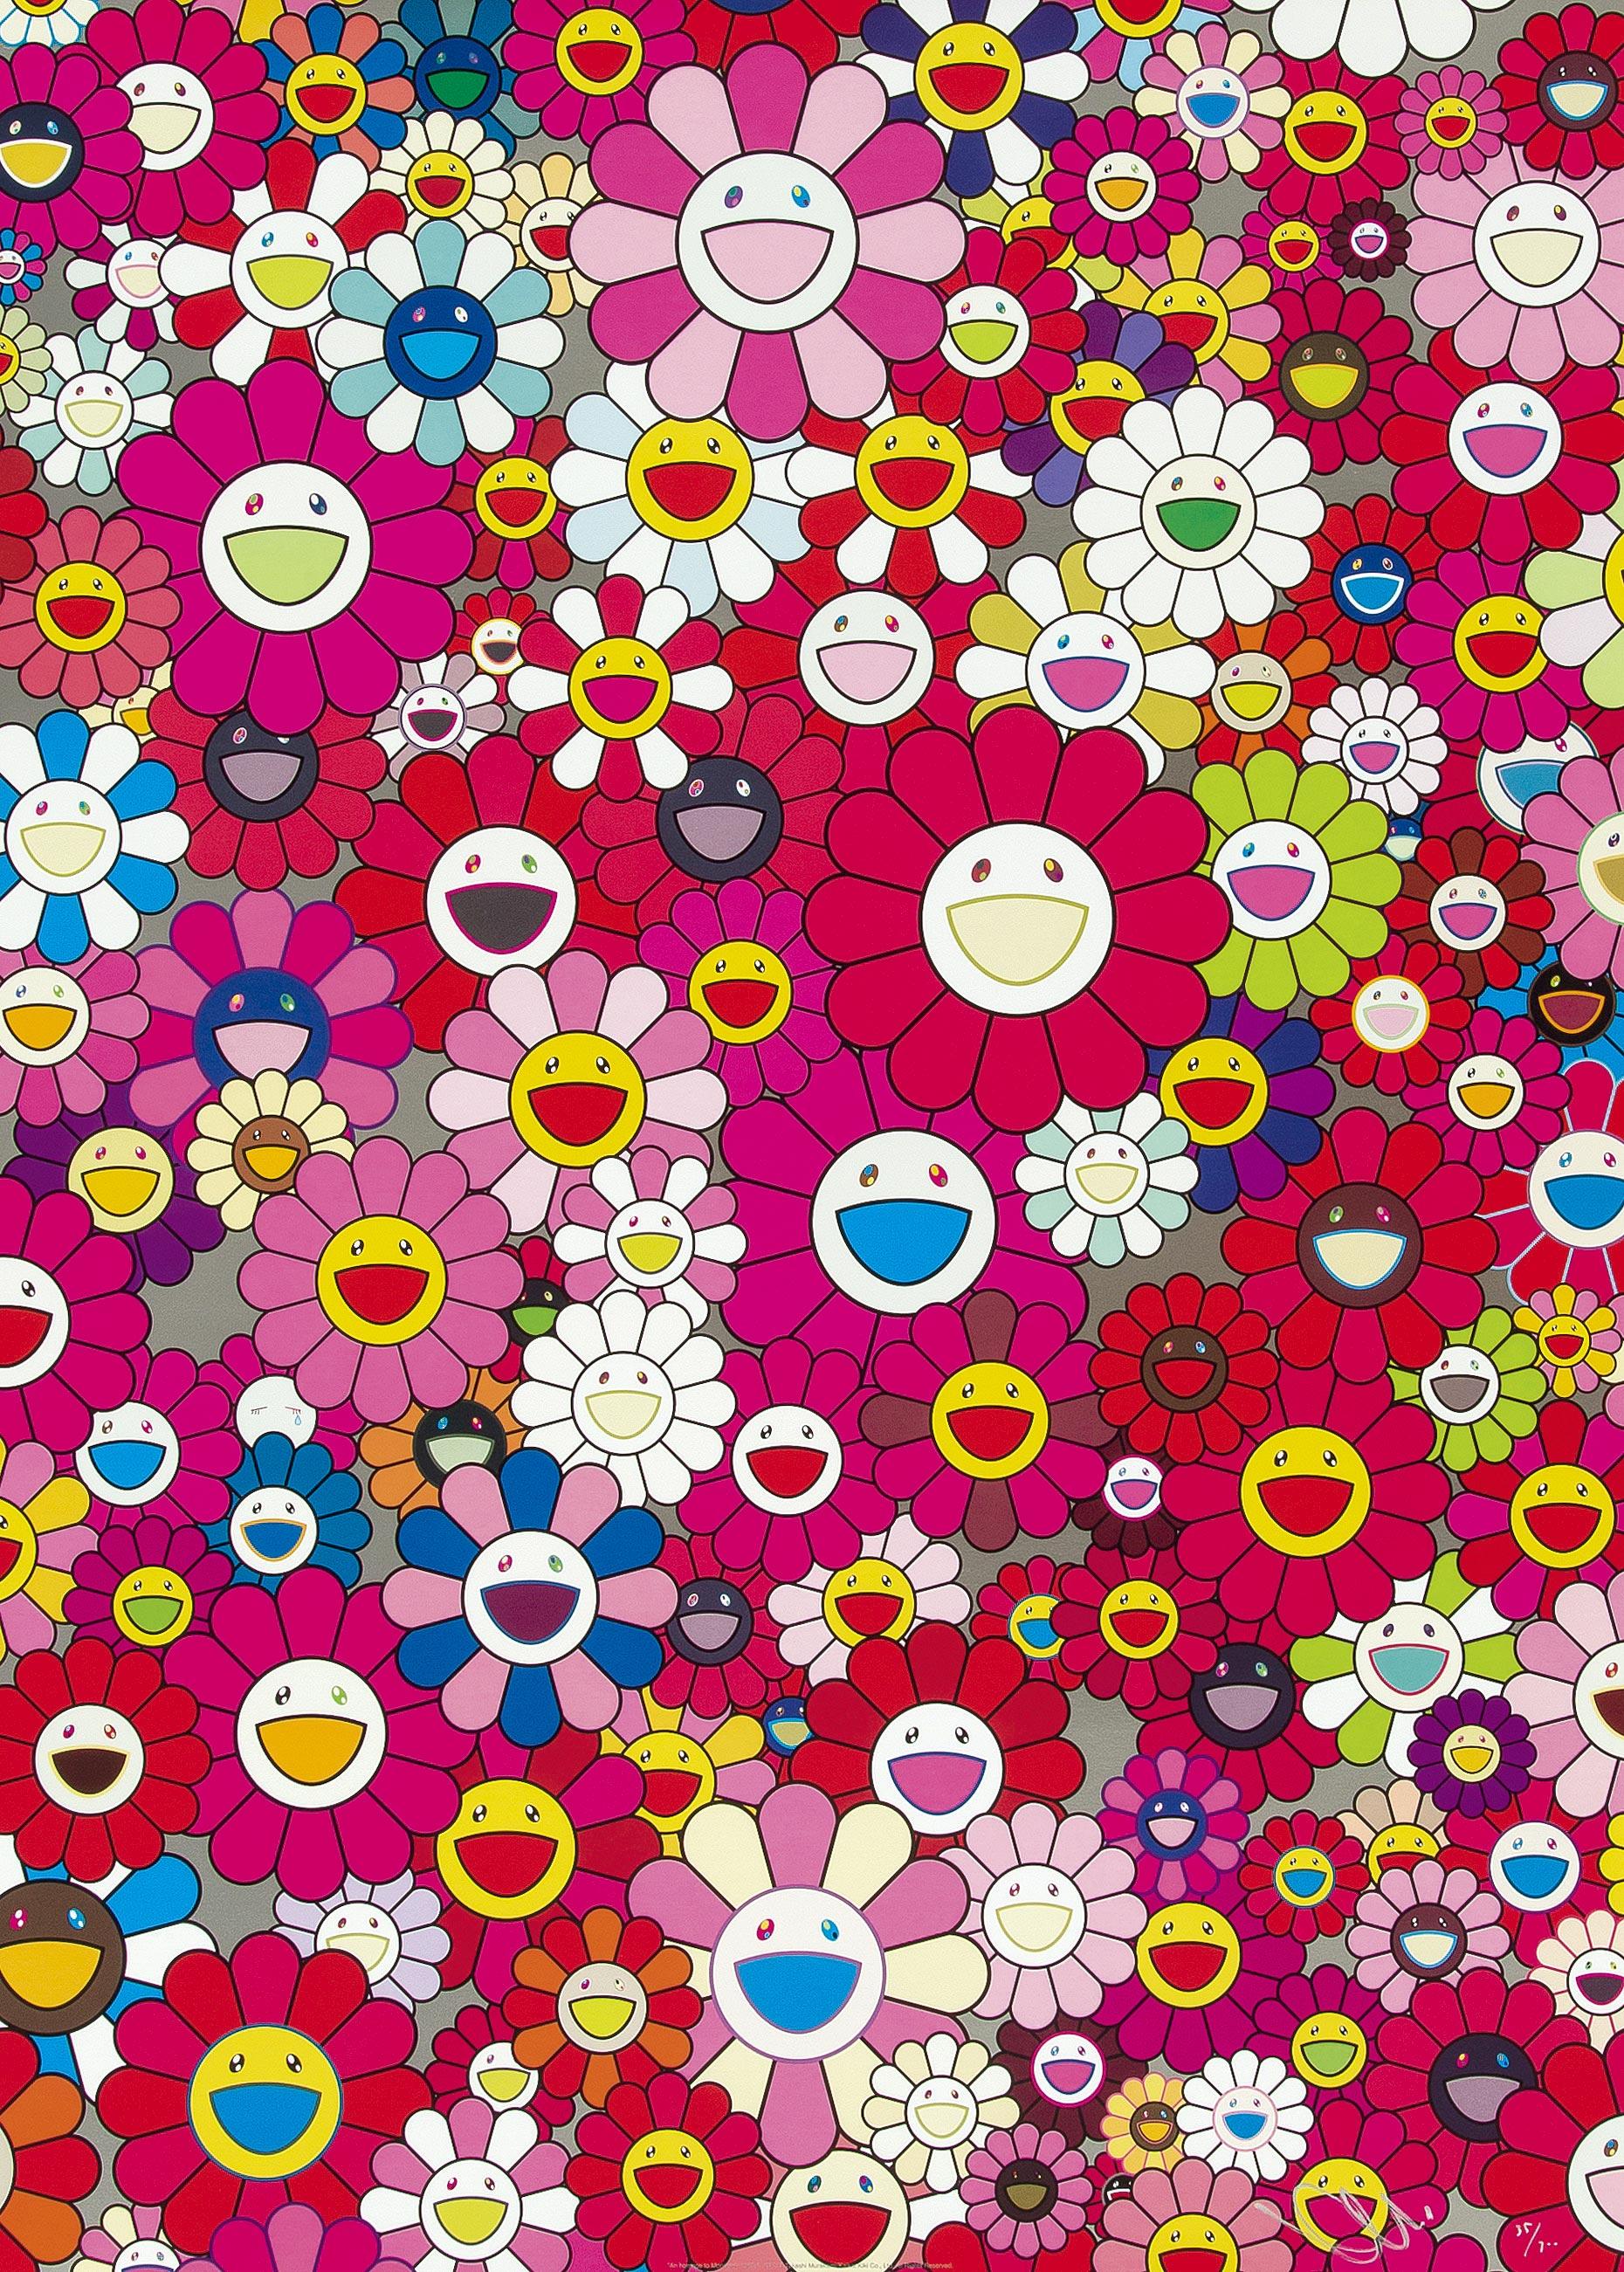 Eine Hommage an Monopink, 1960A, 2012 von Takashi Murakami
Offsetdruck, nummeriert und vom Künstler signiert
27 1/10 × 20 9/10 in
68.8 × 53 cm
Ausgabe  35/300

Takashi Murakami ist vor allem für seine zeitgenössische Kombination aus bildender Kunst